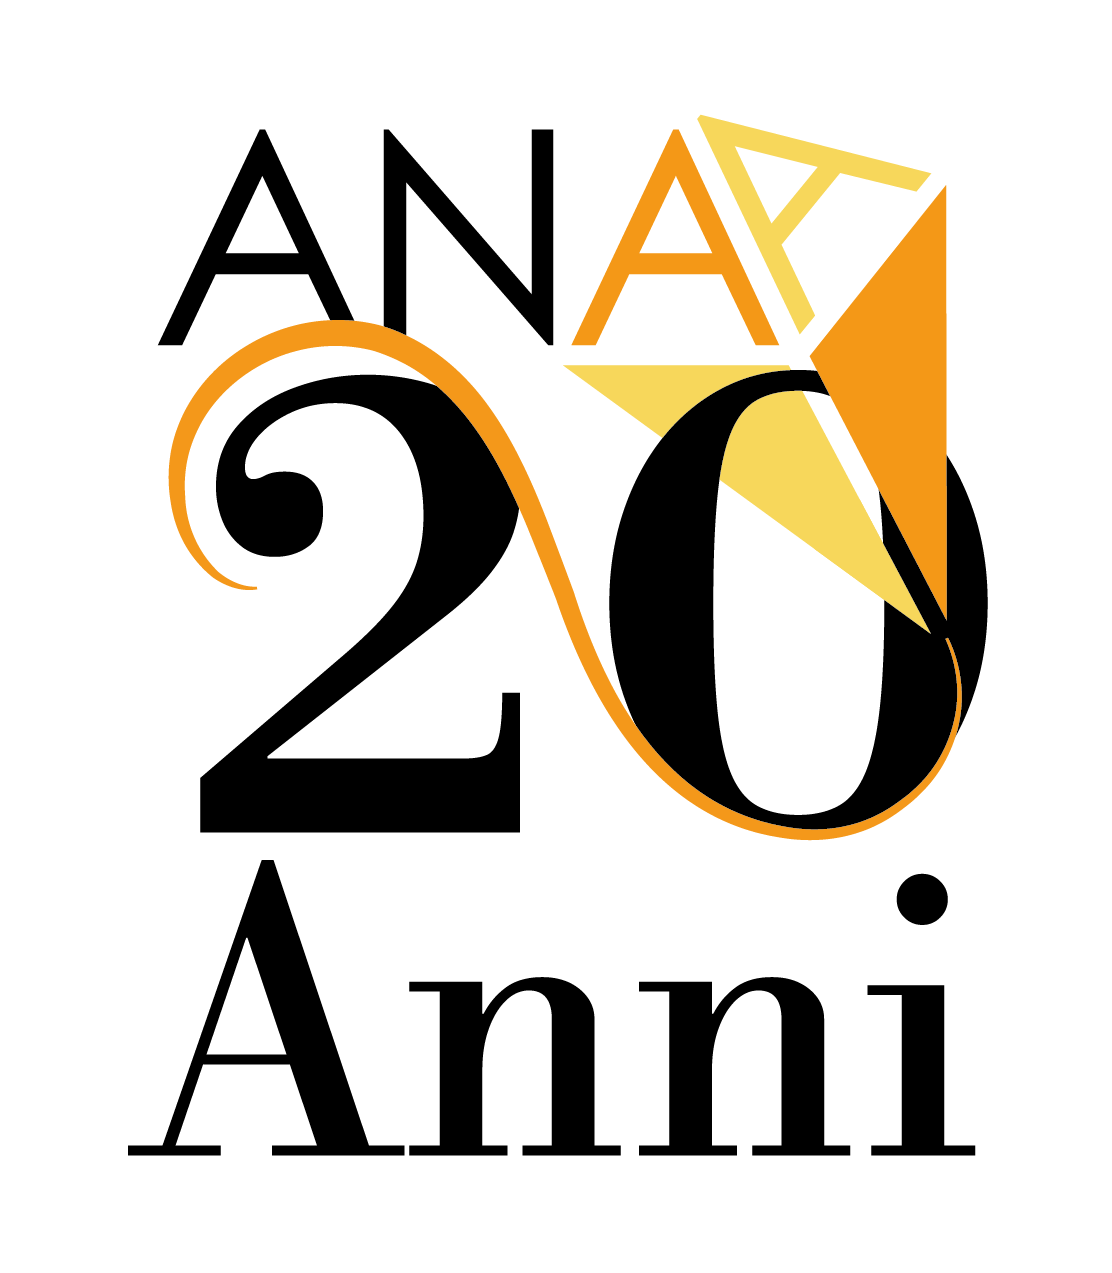 ANAA logo